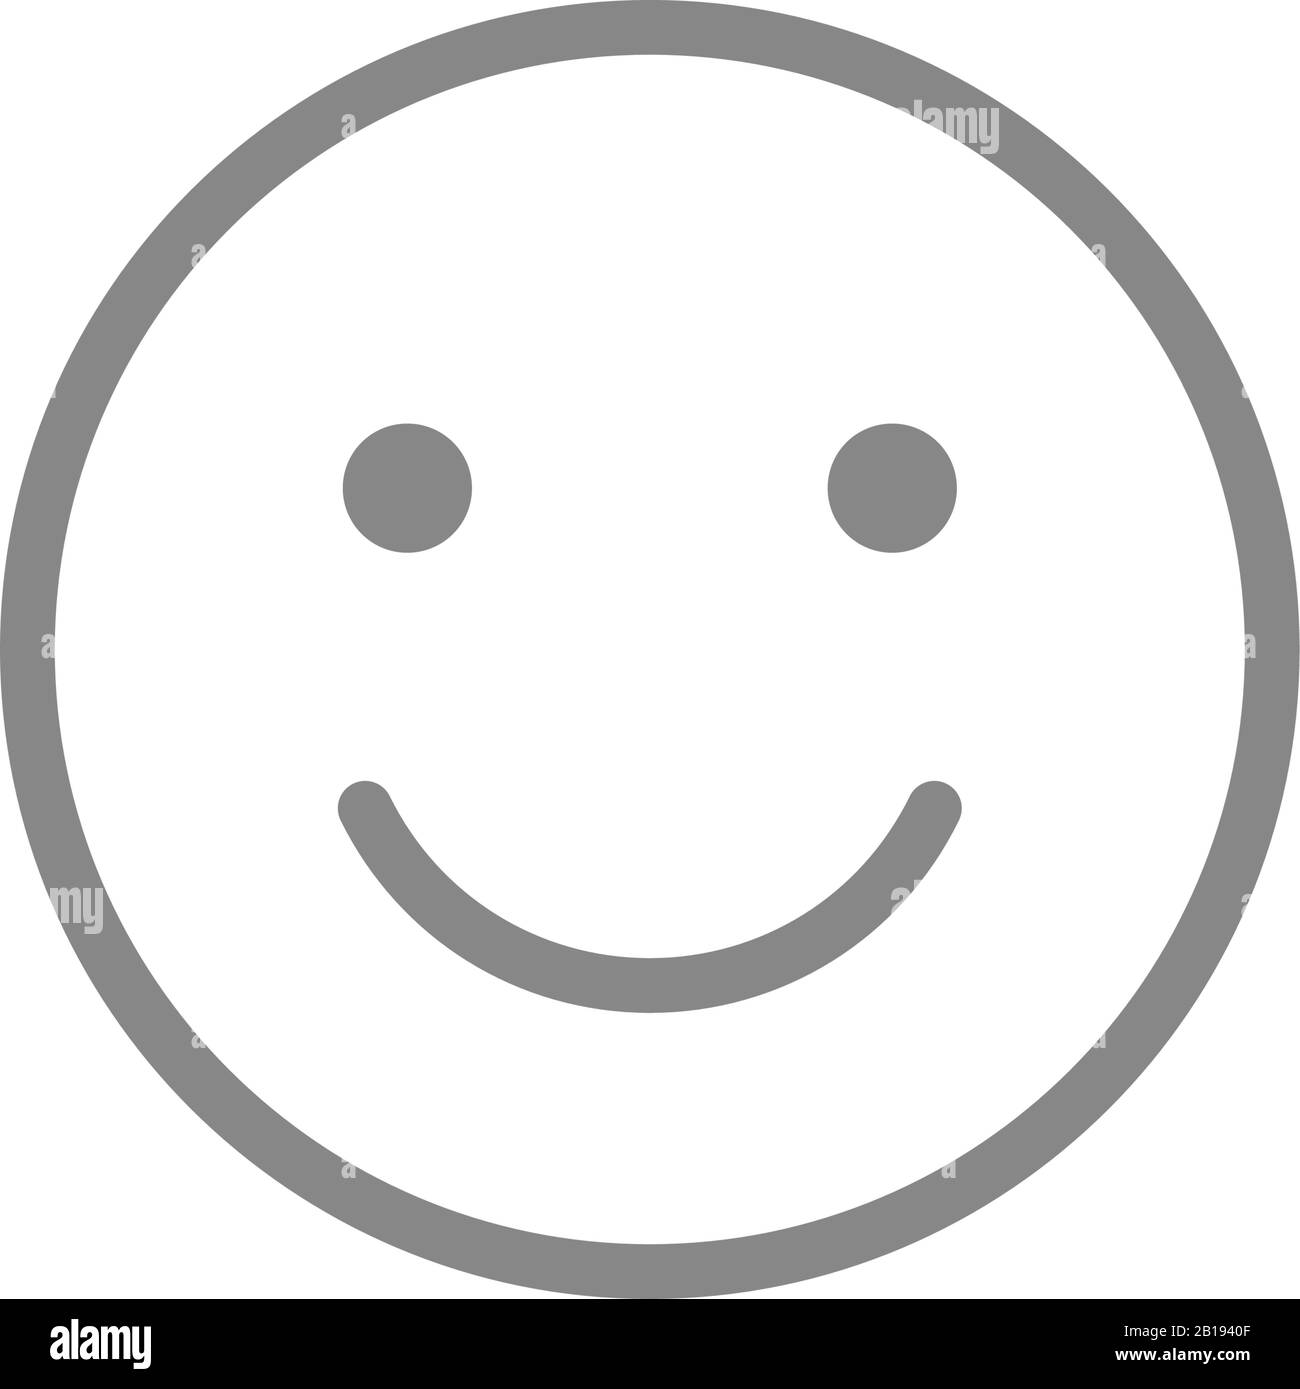 Smiley emoji line icon. Happy, success, satisfaction face symbol. Stock Vector